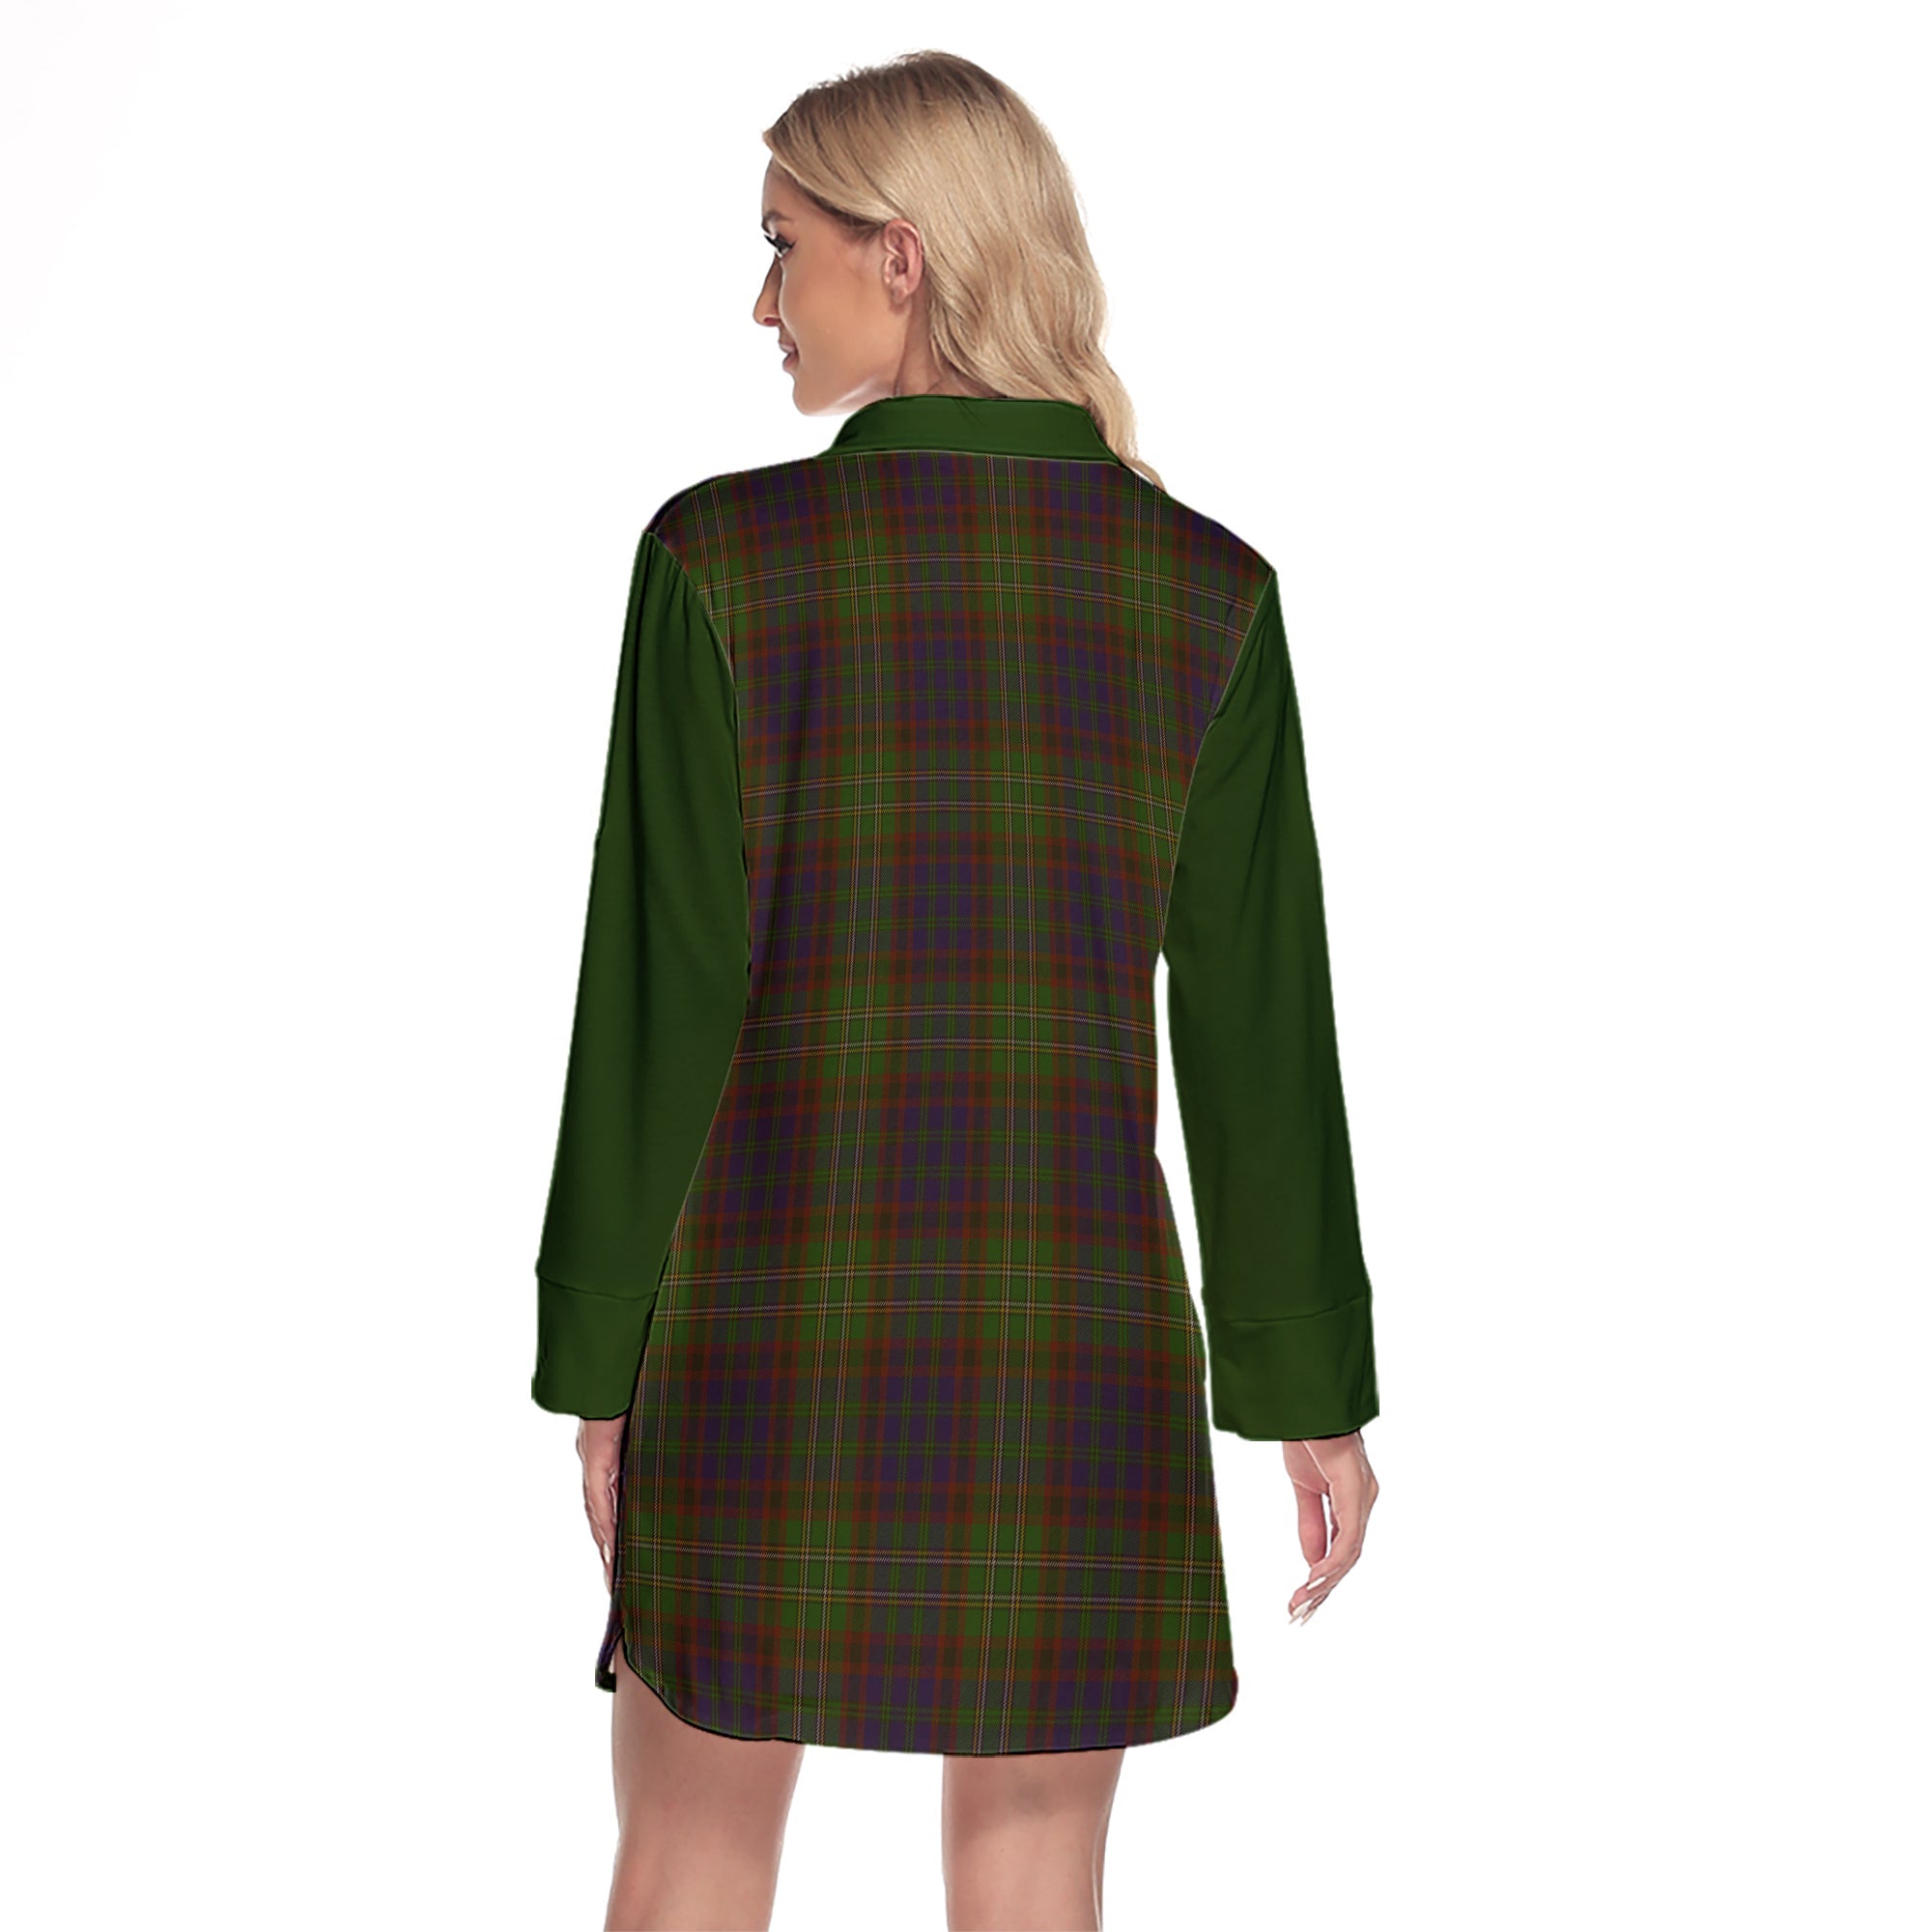 Cunningham Hunting Modern Tartan Women's Lapel Shirt Dress With Long Sleeve